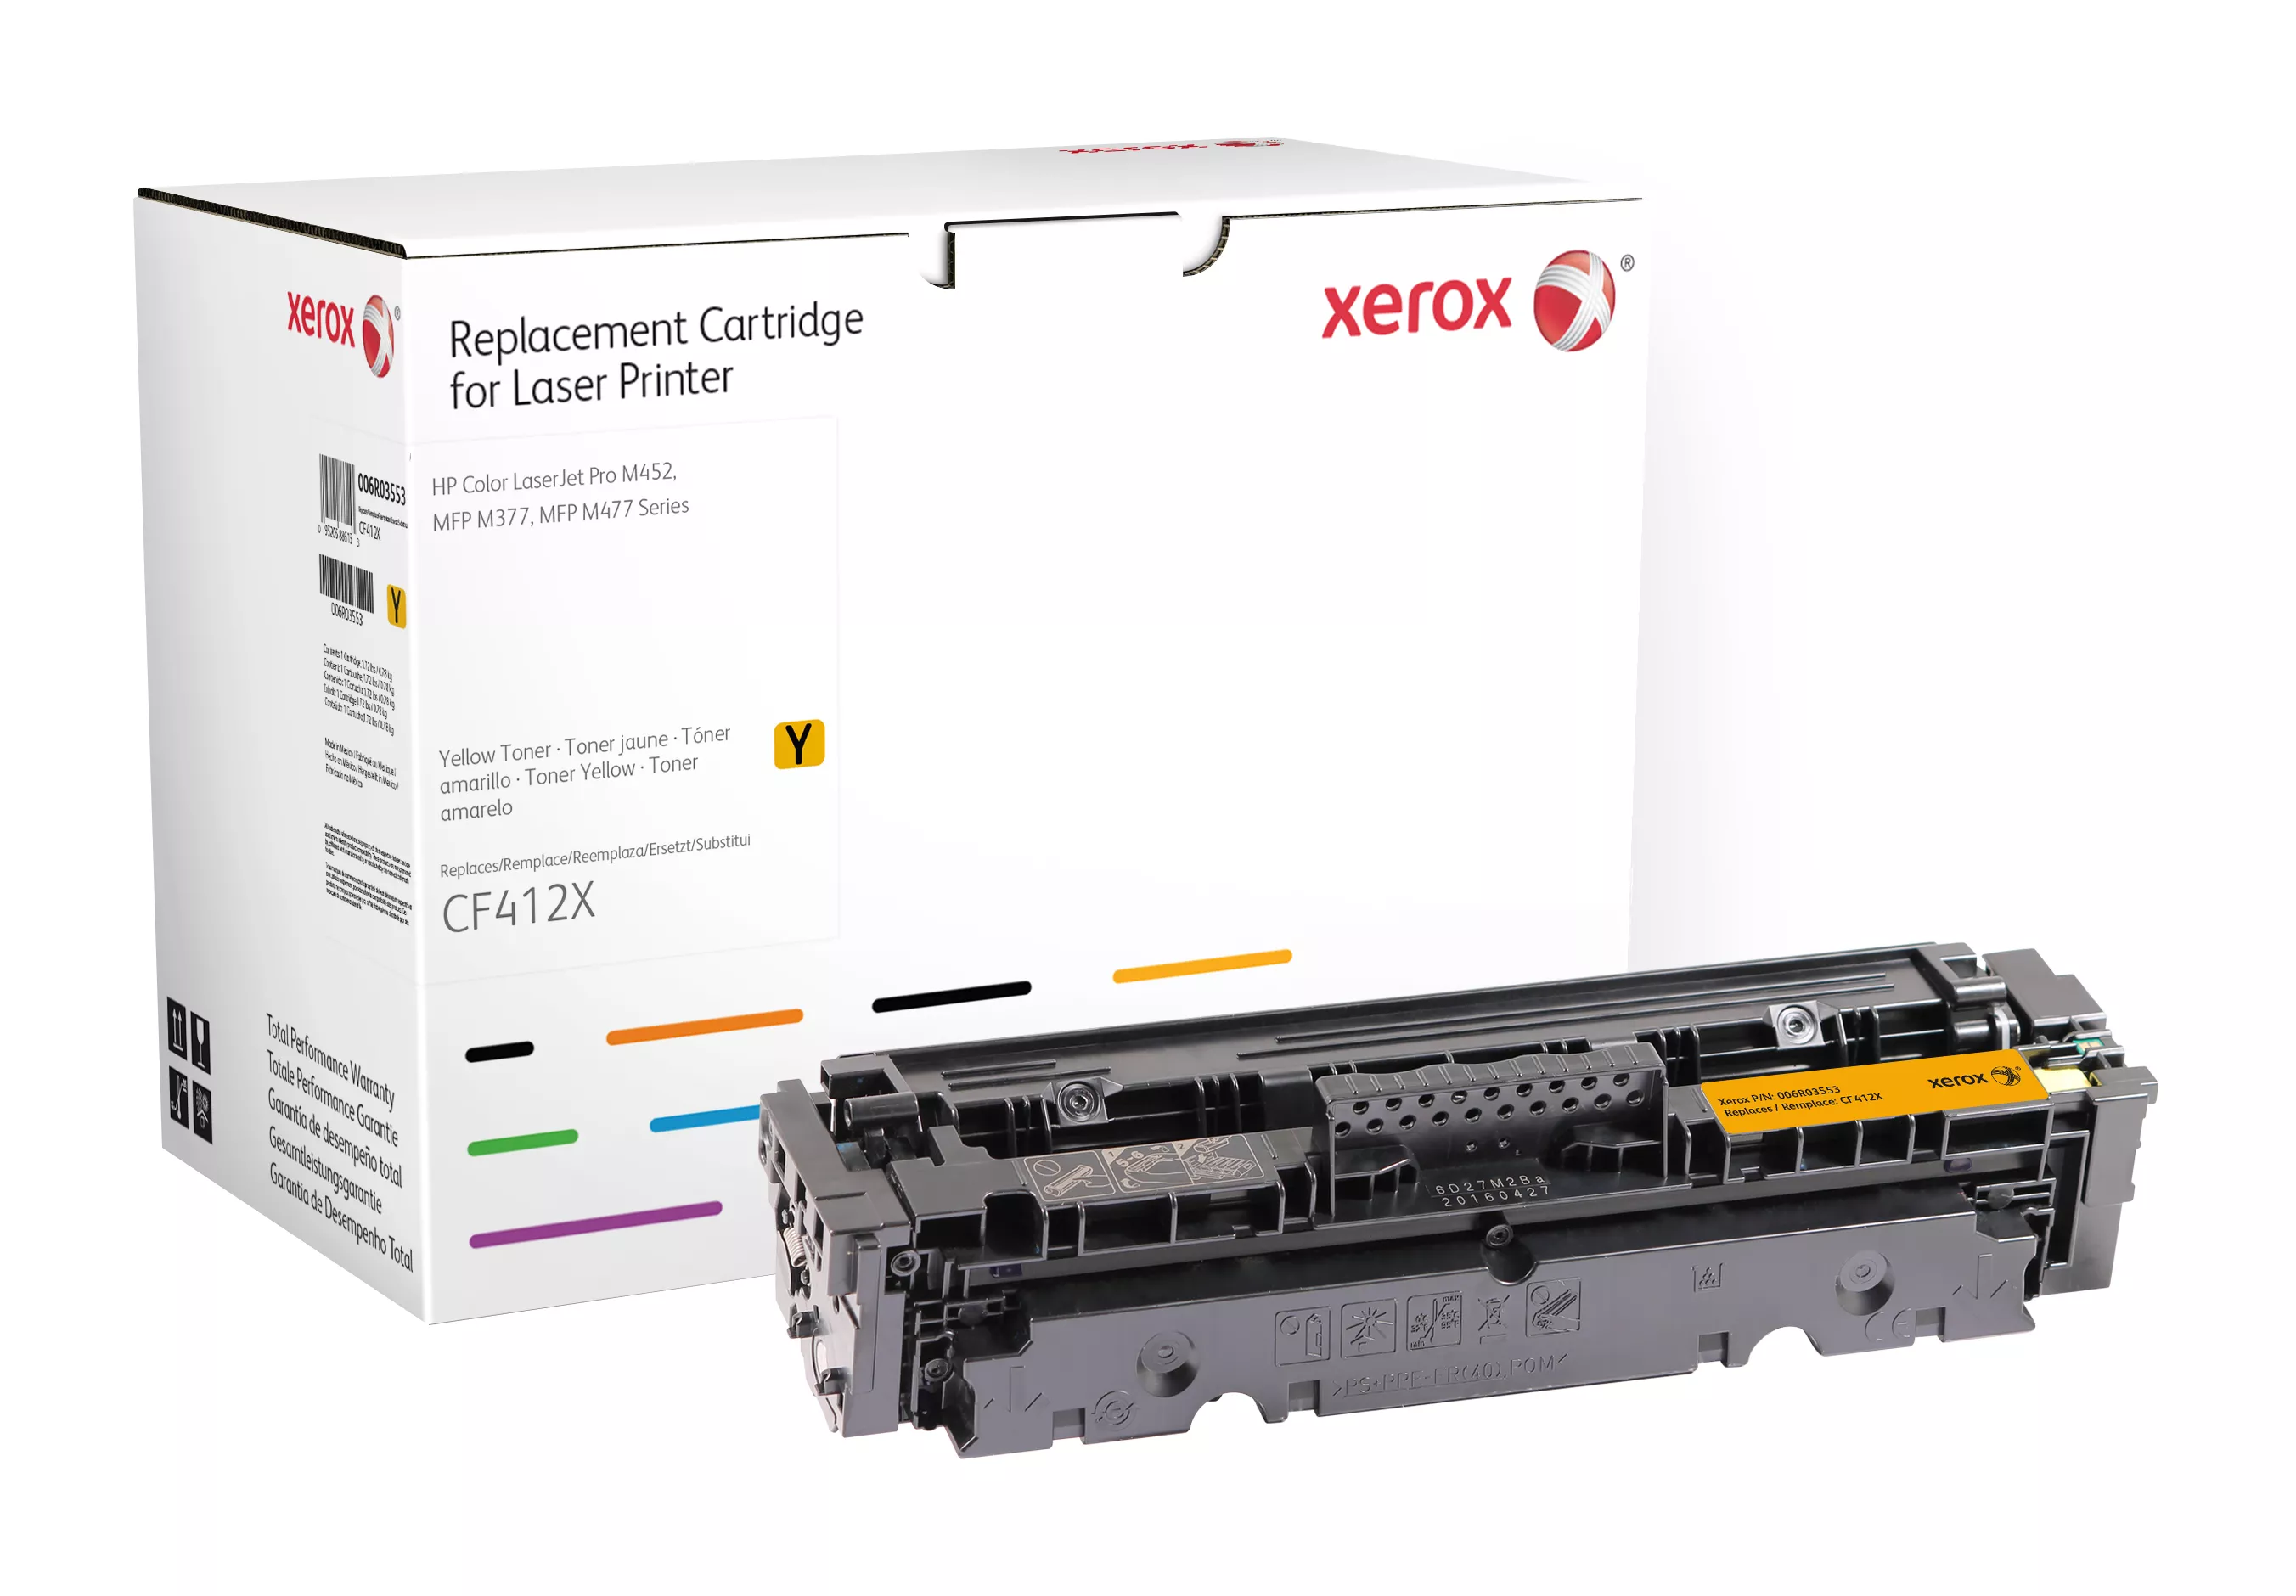 Achat Toner remanufacturé Jaune Everyday™ de Xerox compatible au meilleur prix